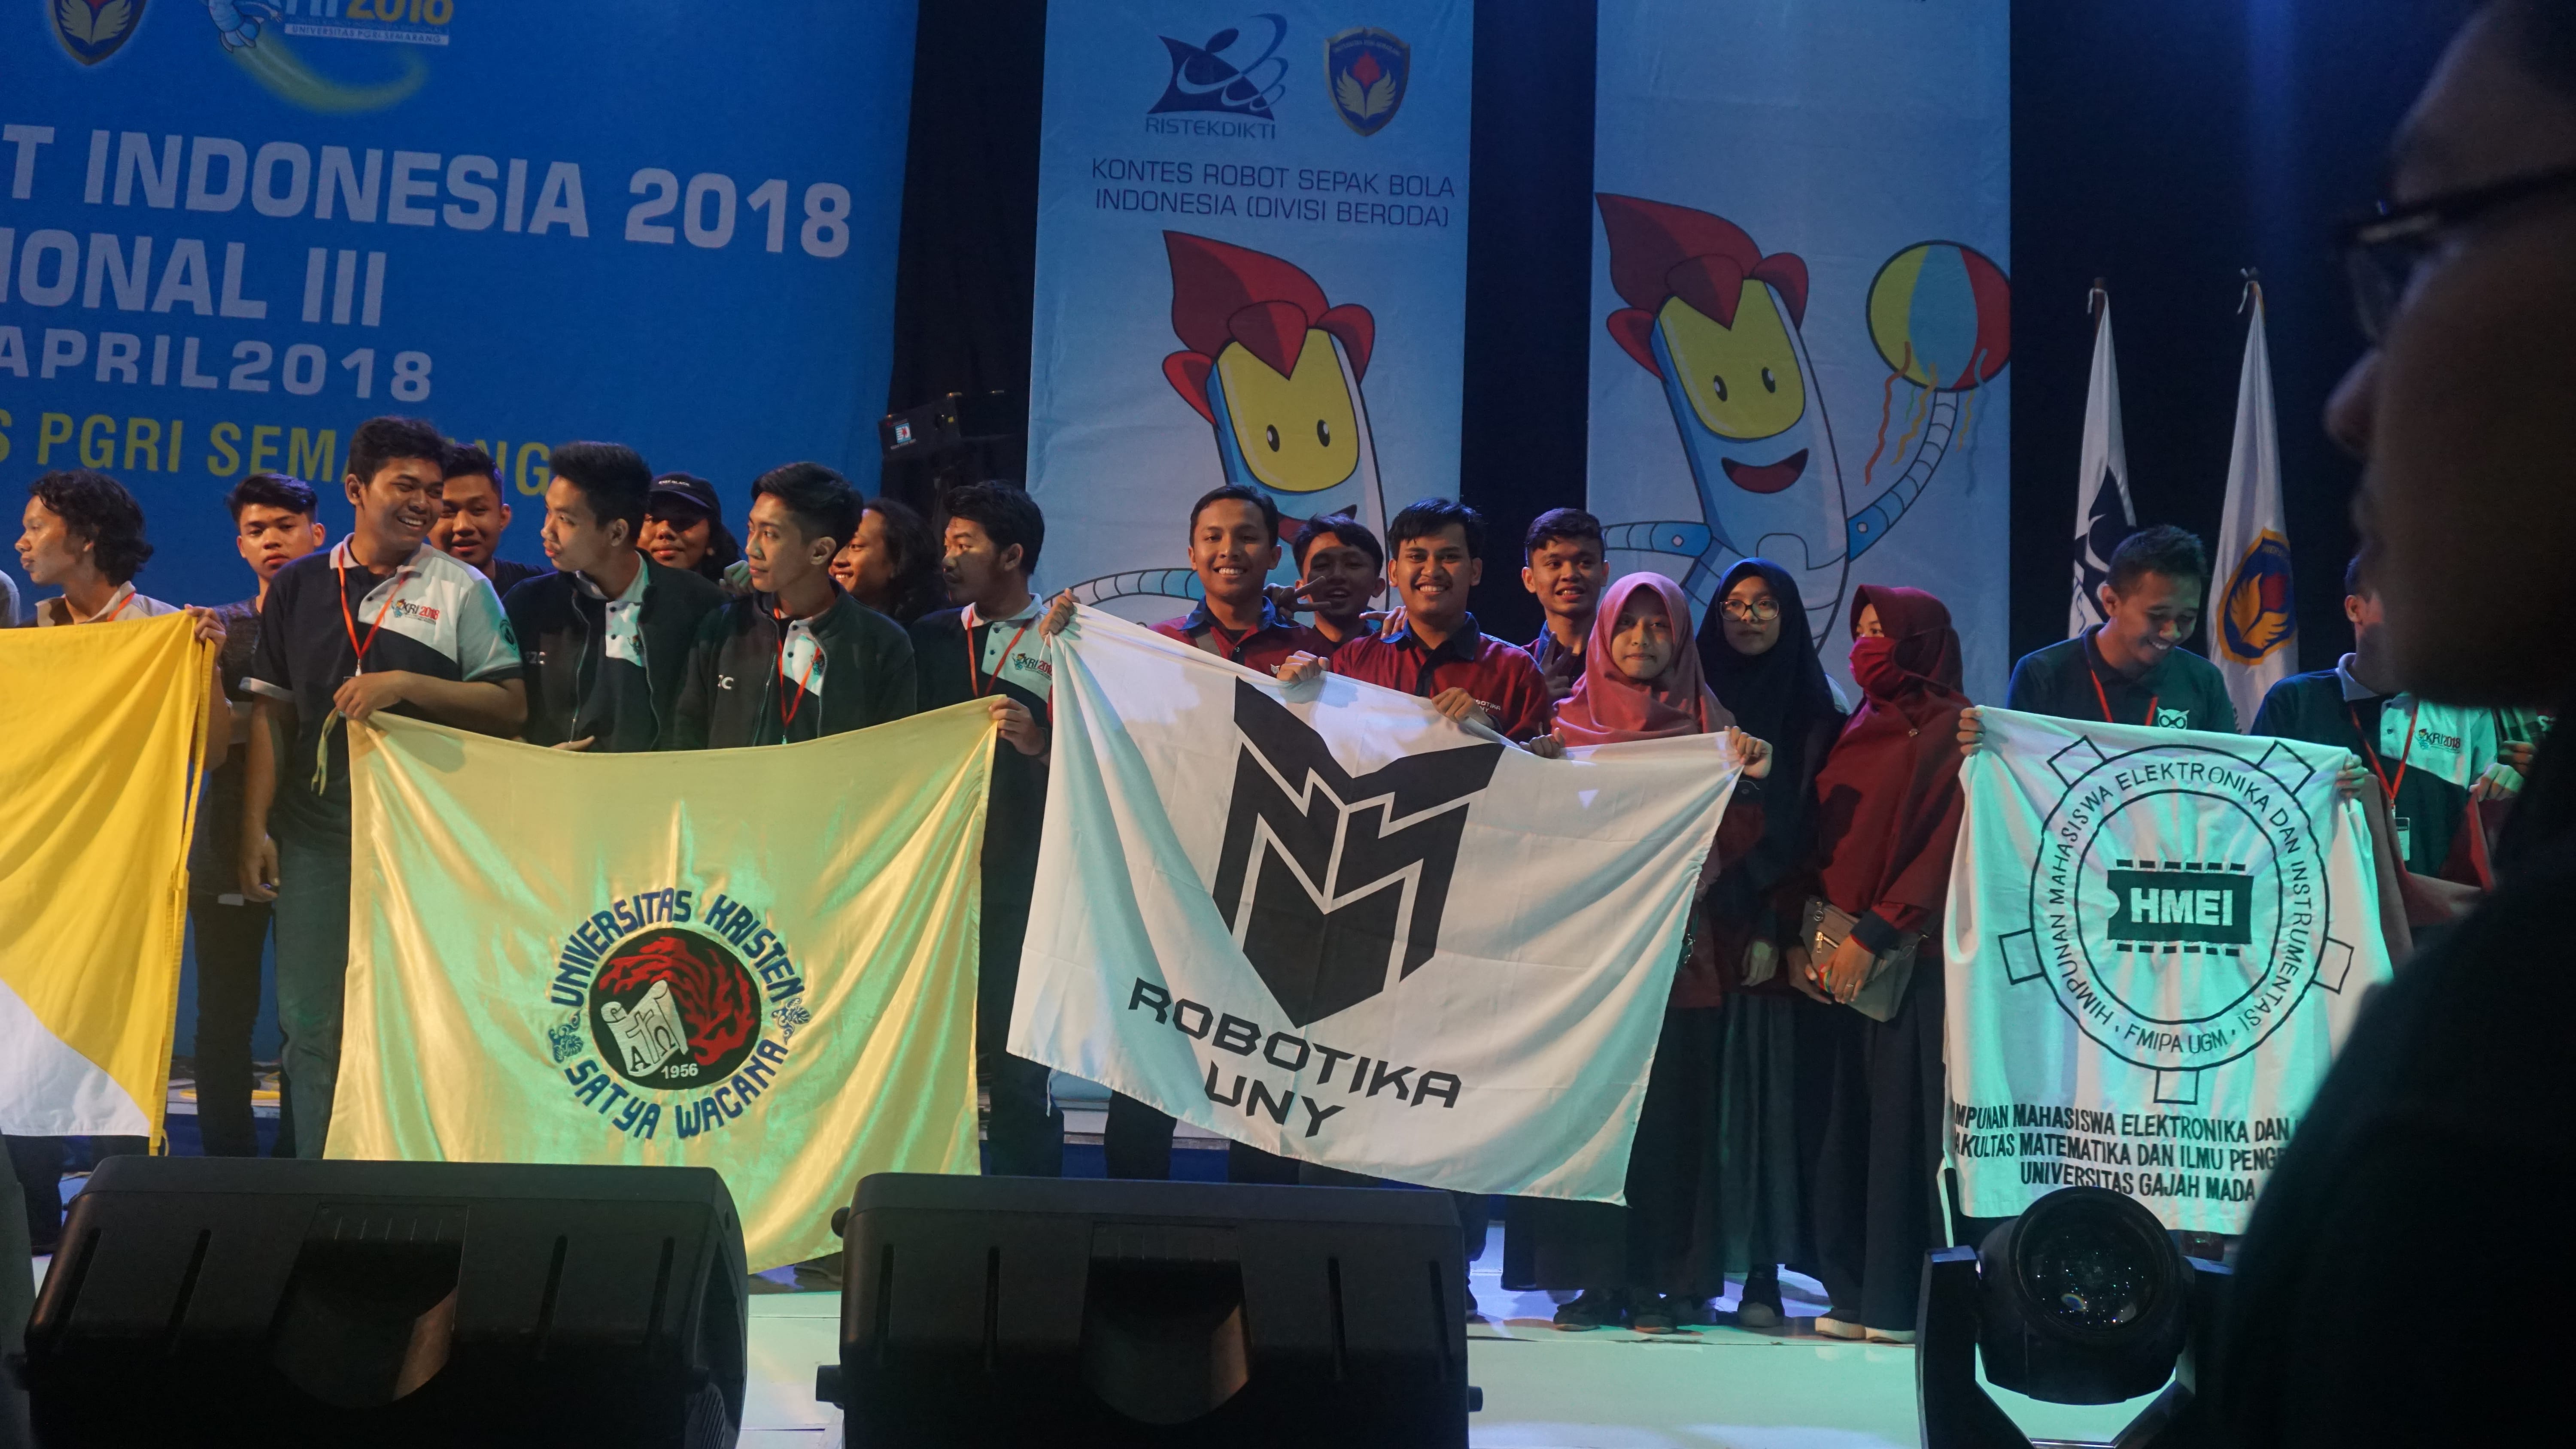 Foto Kategori KRI dalam Kontes Robot Regional III DIY-Jateng 2018 di UPGRIS Semarang